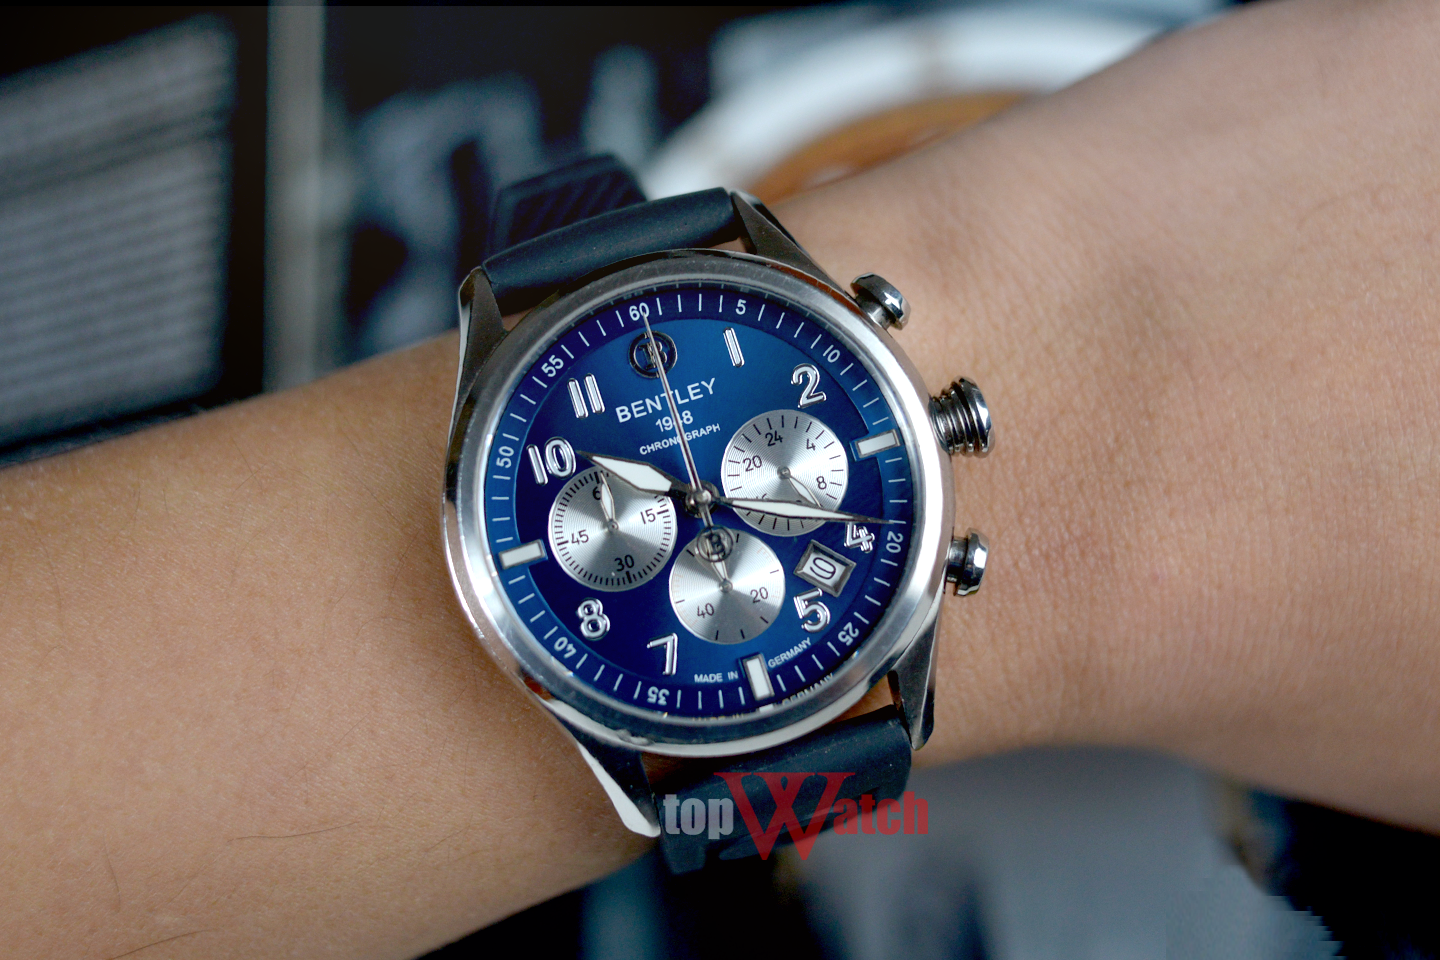 Khám phá cùng TopWatch complication là gì trong đồng hồ đeo tay